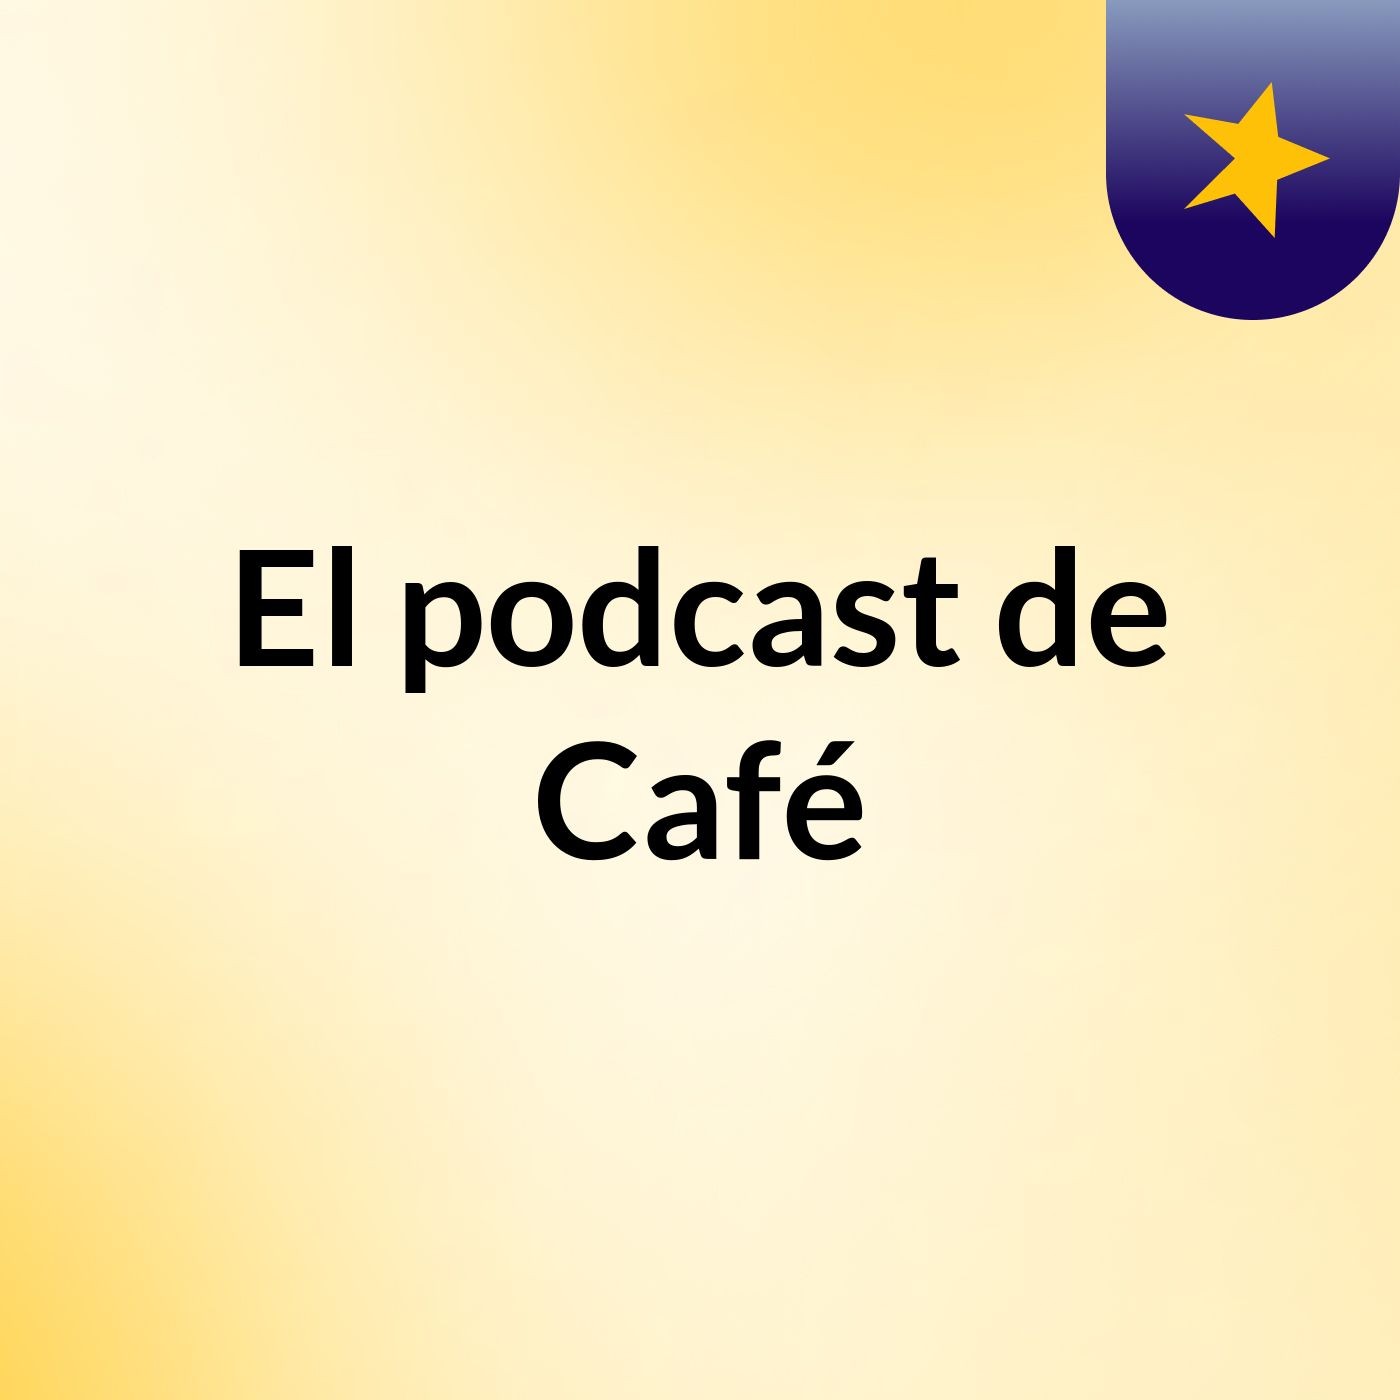 El podcast de Café